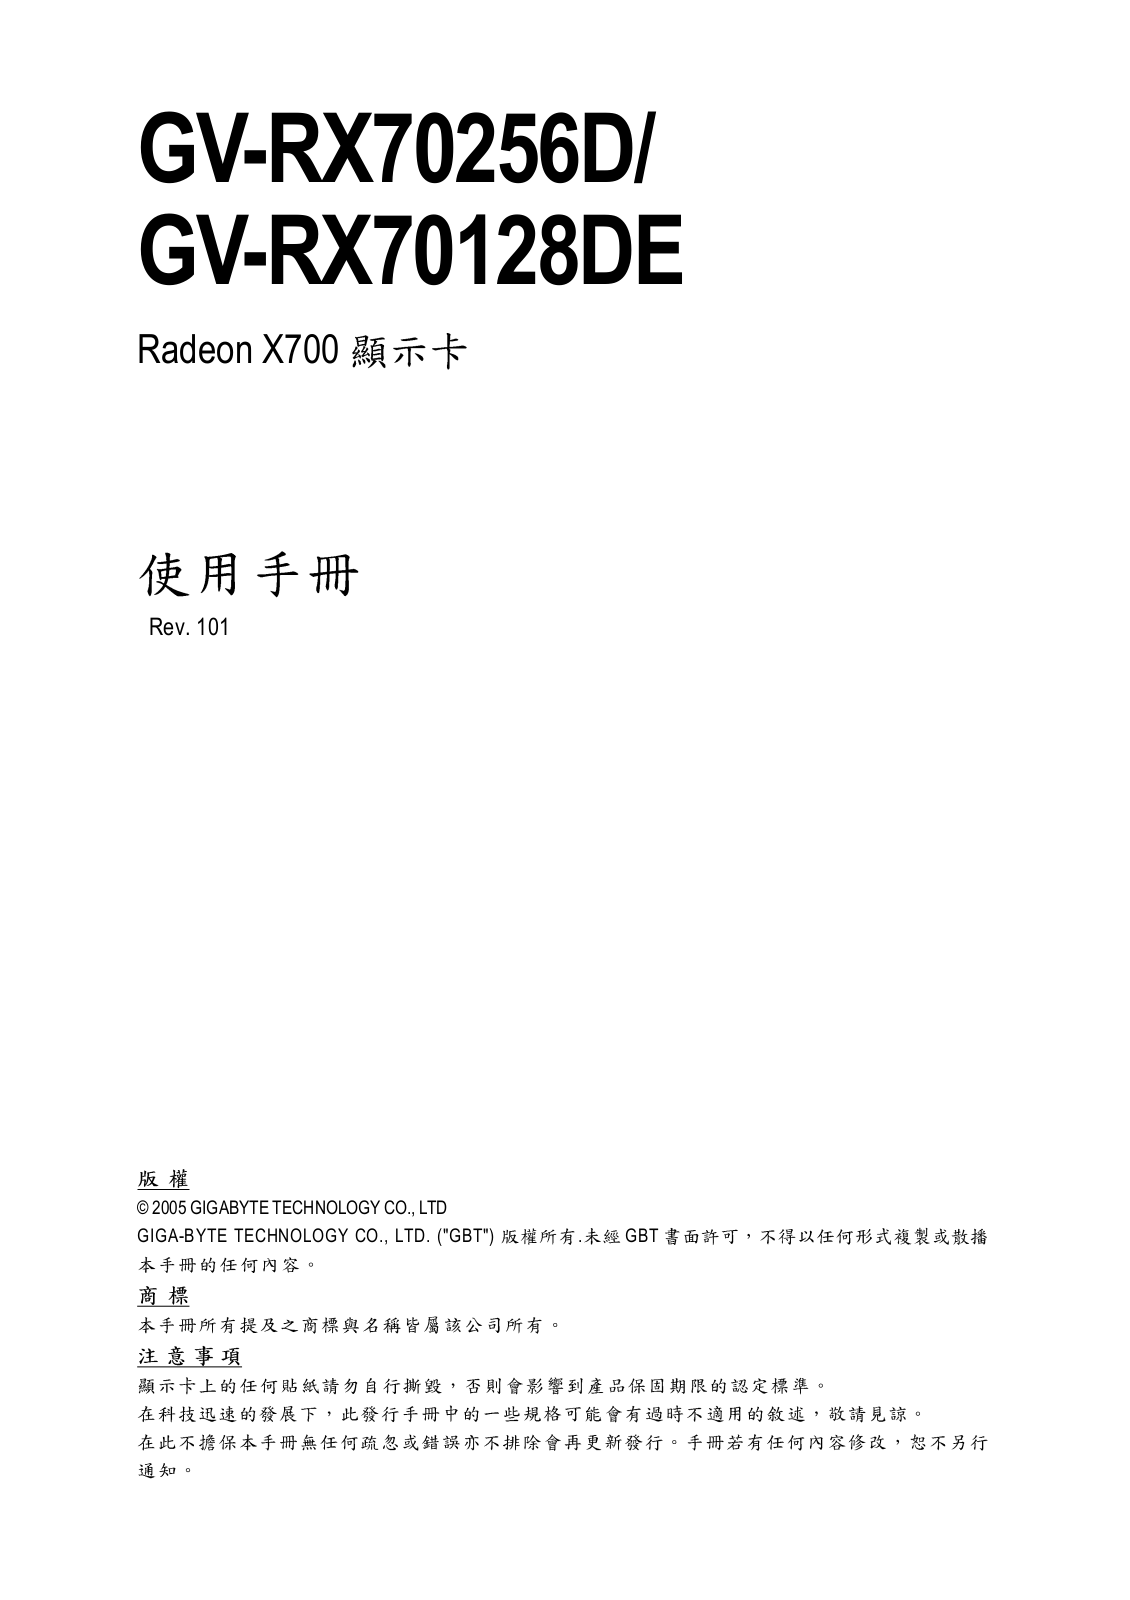 Gigabyte GV-RX70256D, GV-RX70128DE User Manual